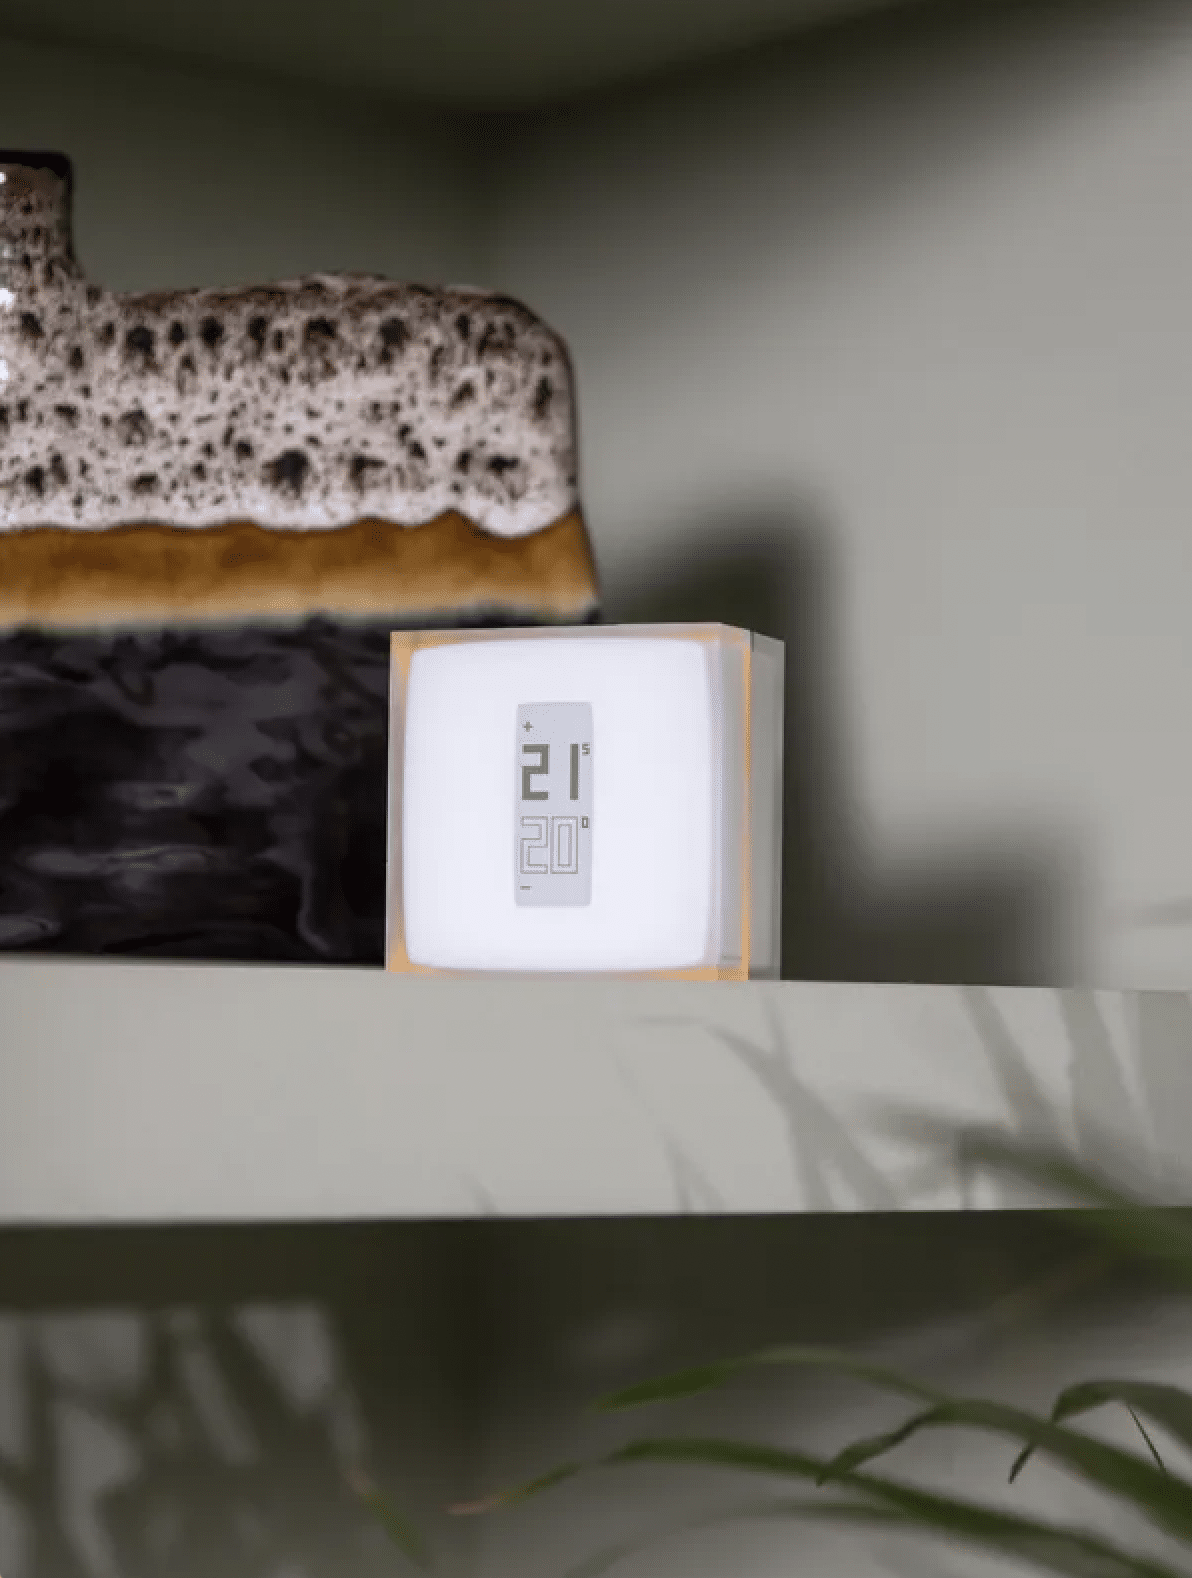 Thermostat connecté filaire v2 - Spécialiste vente online